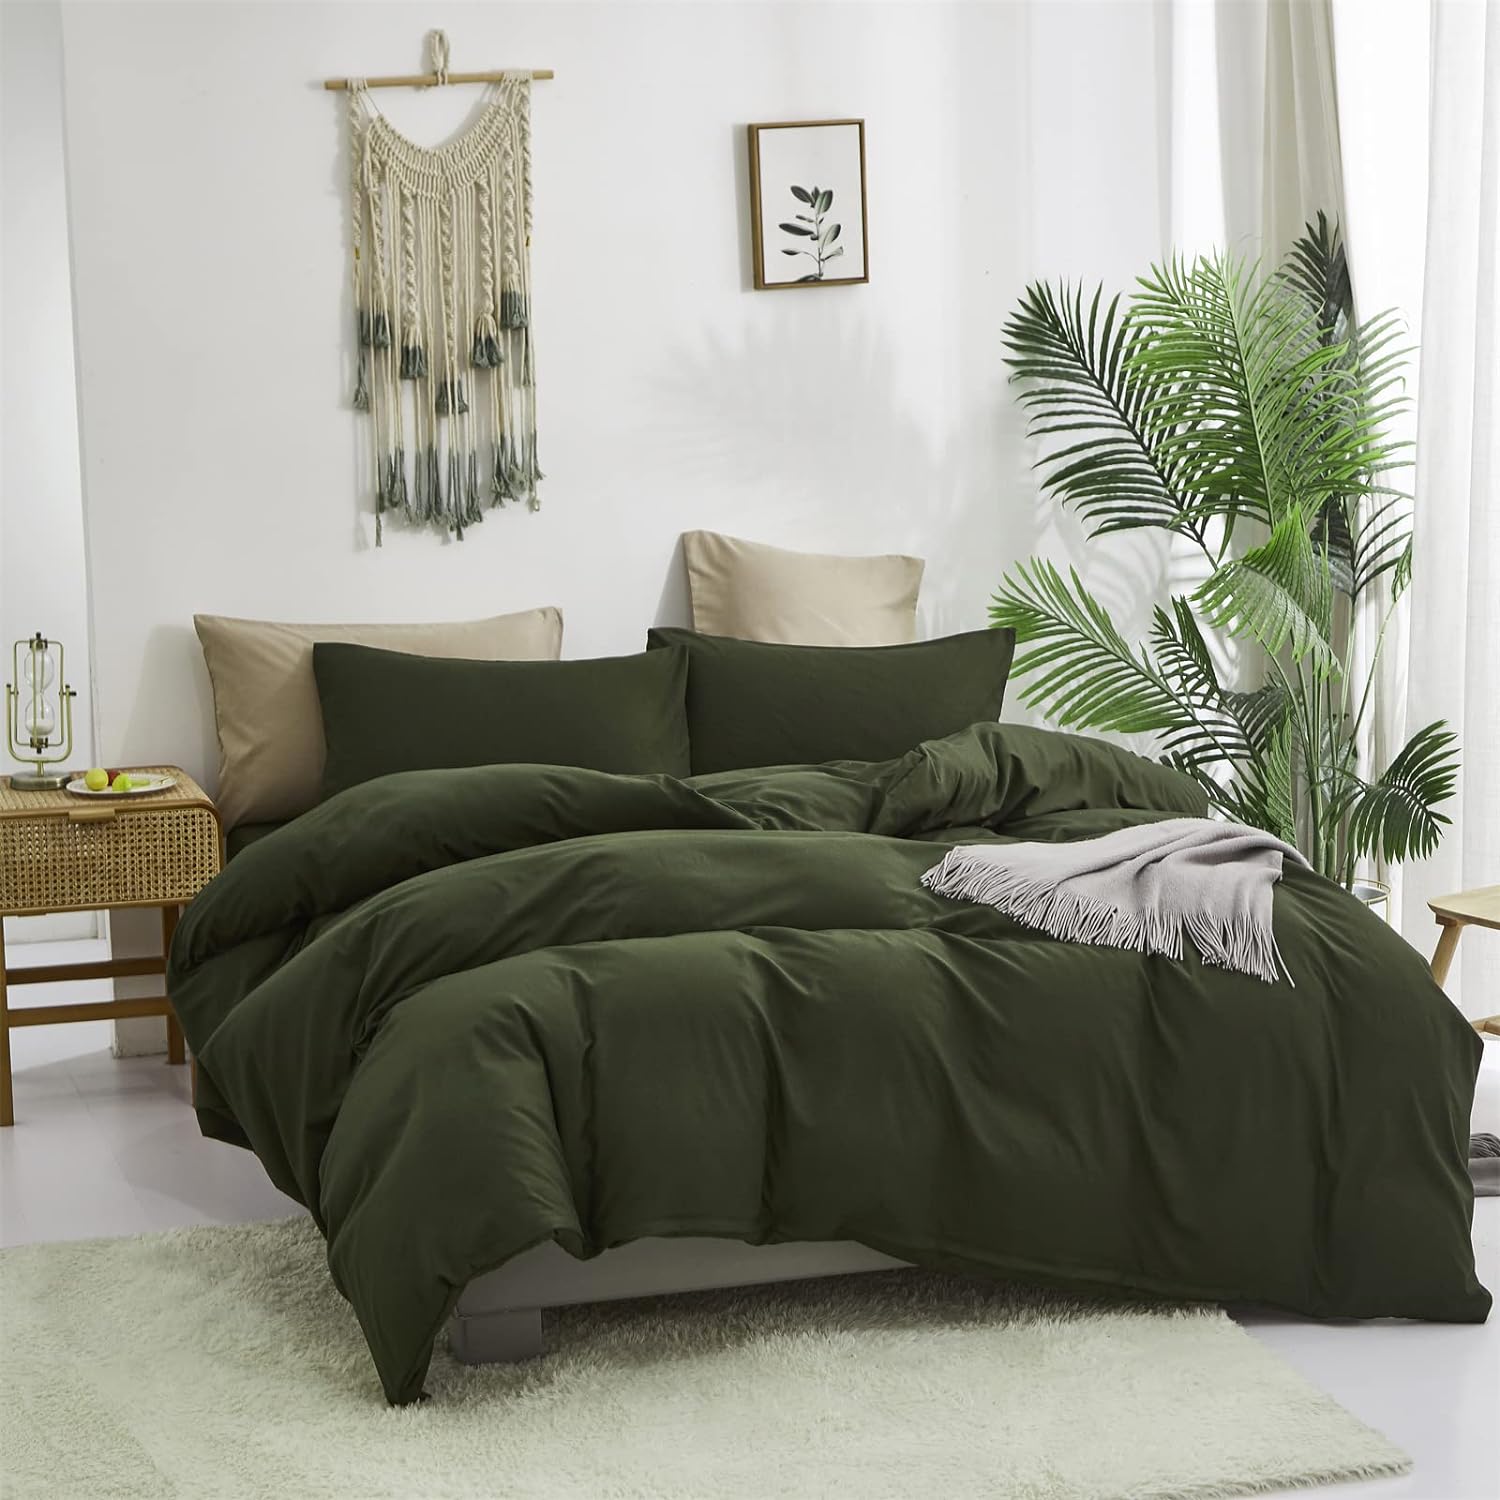 Juego de edredón verde militar, juego de ropa de cama de color verde oliva,